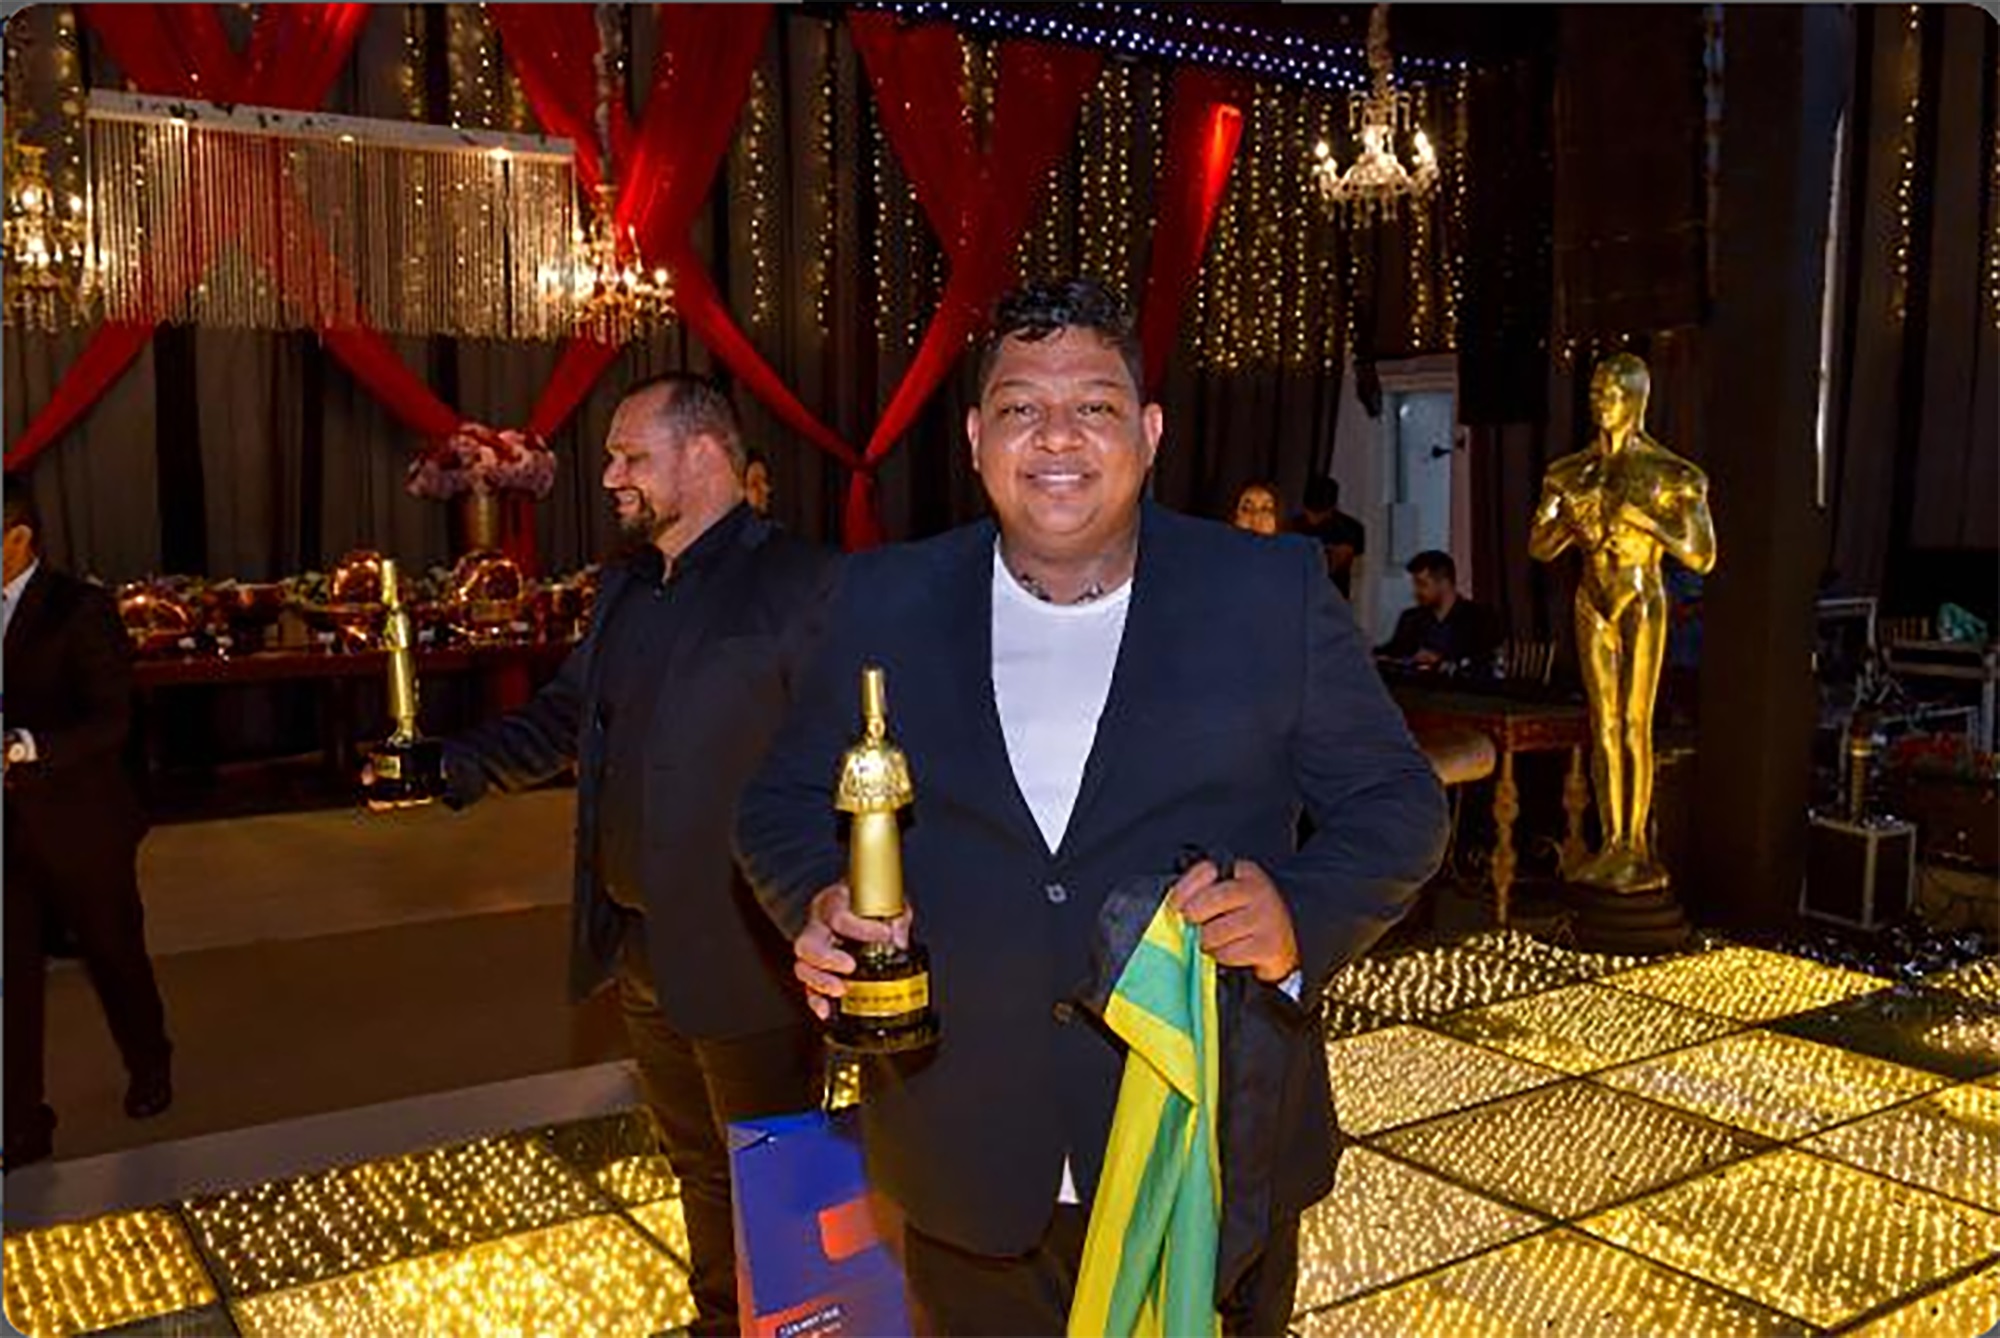 Paulo garantiu vaga na premiação após vitória no Enchefs Goiás com seu prato "Ceviche: do litoral ao Cerrado" 